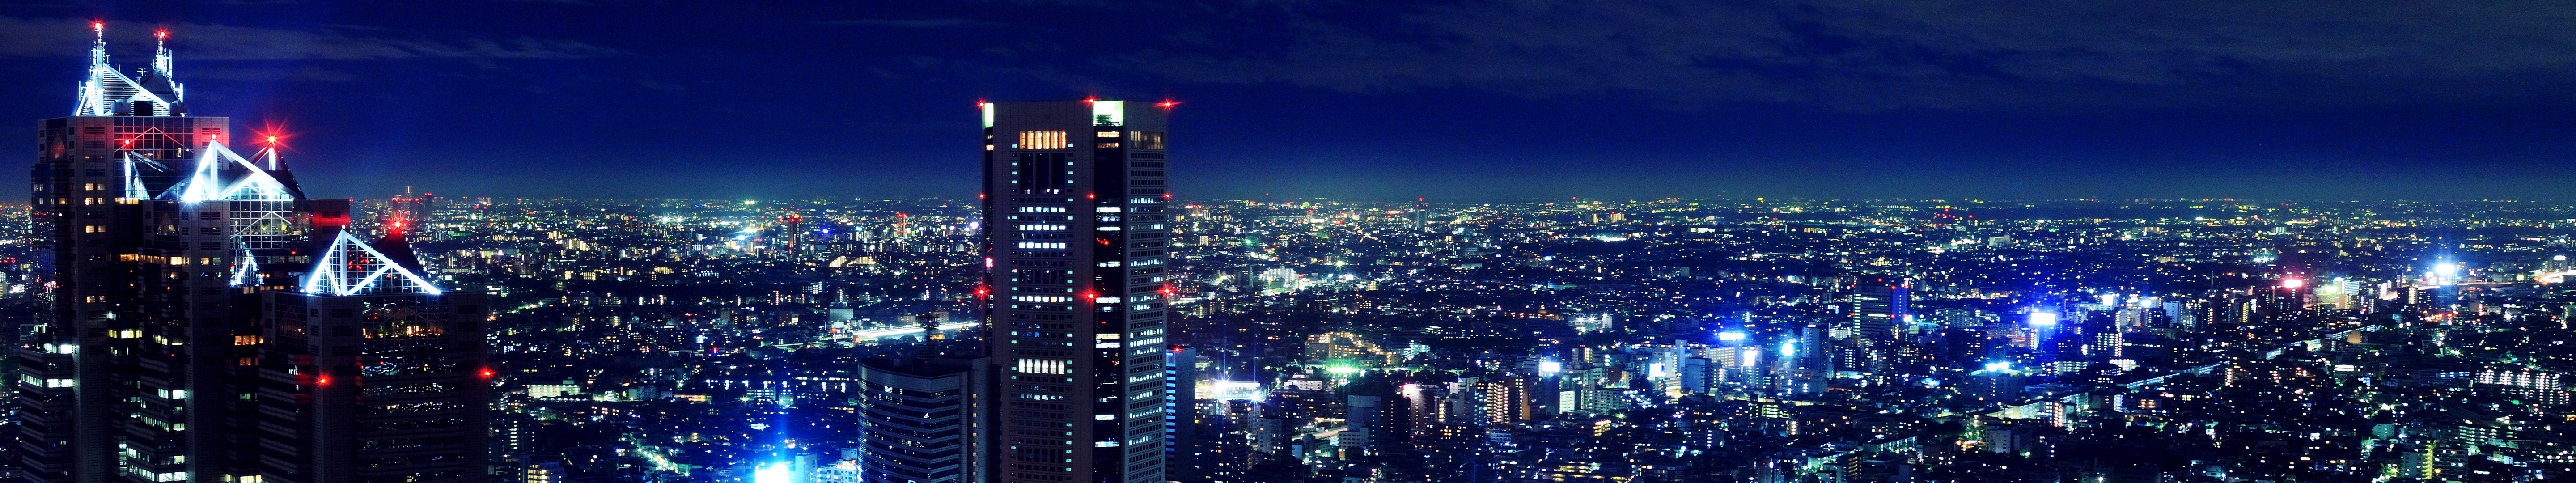 Hình nền Tokyo đẹp, làm cho màn hình máy tính của bạn thêm phần tươi sáng và sống động. Hãy xem ngay hình ảnh liên quan để trải nghiệm cảm giác đó nhé.